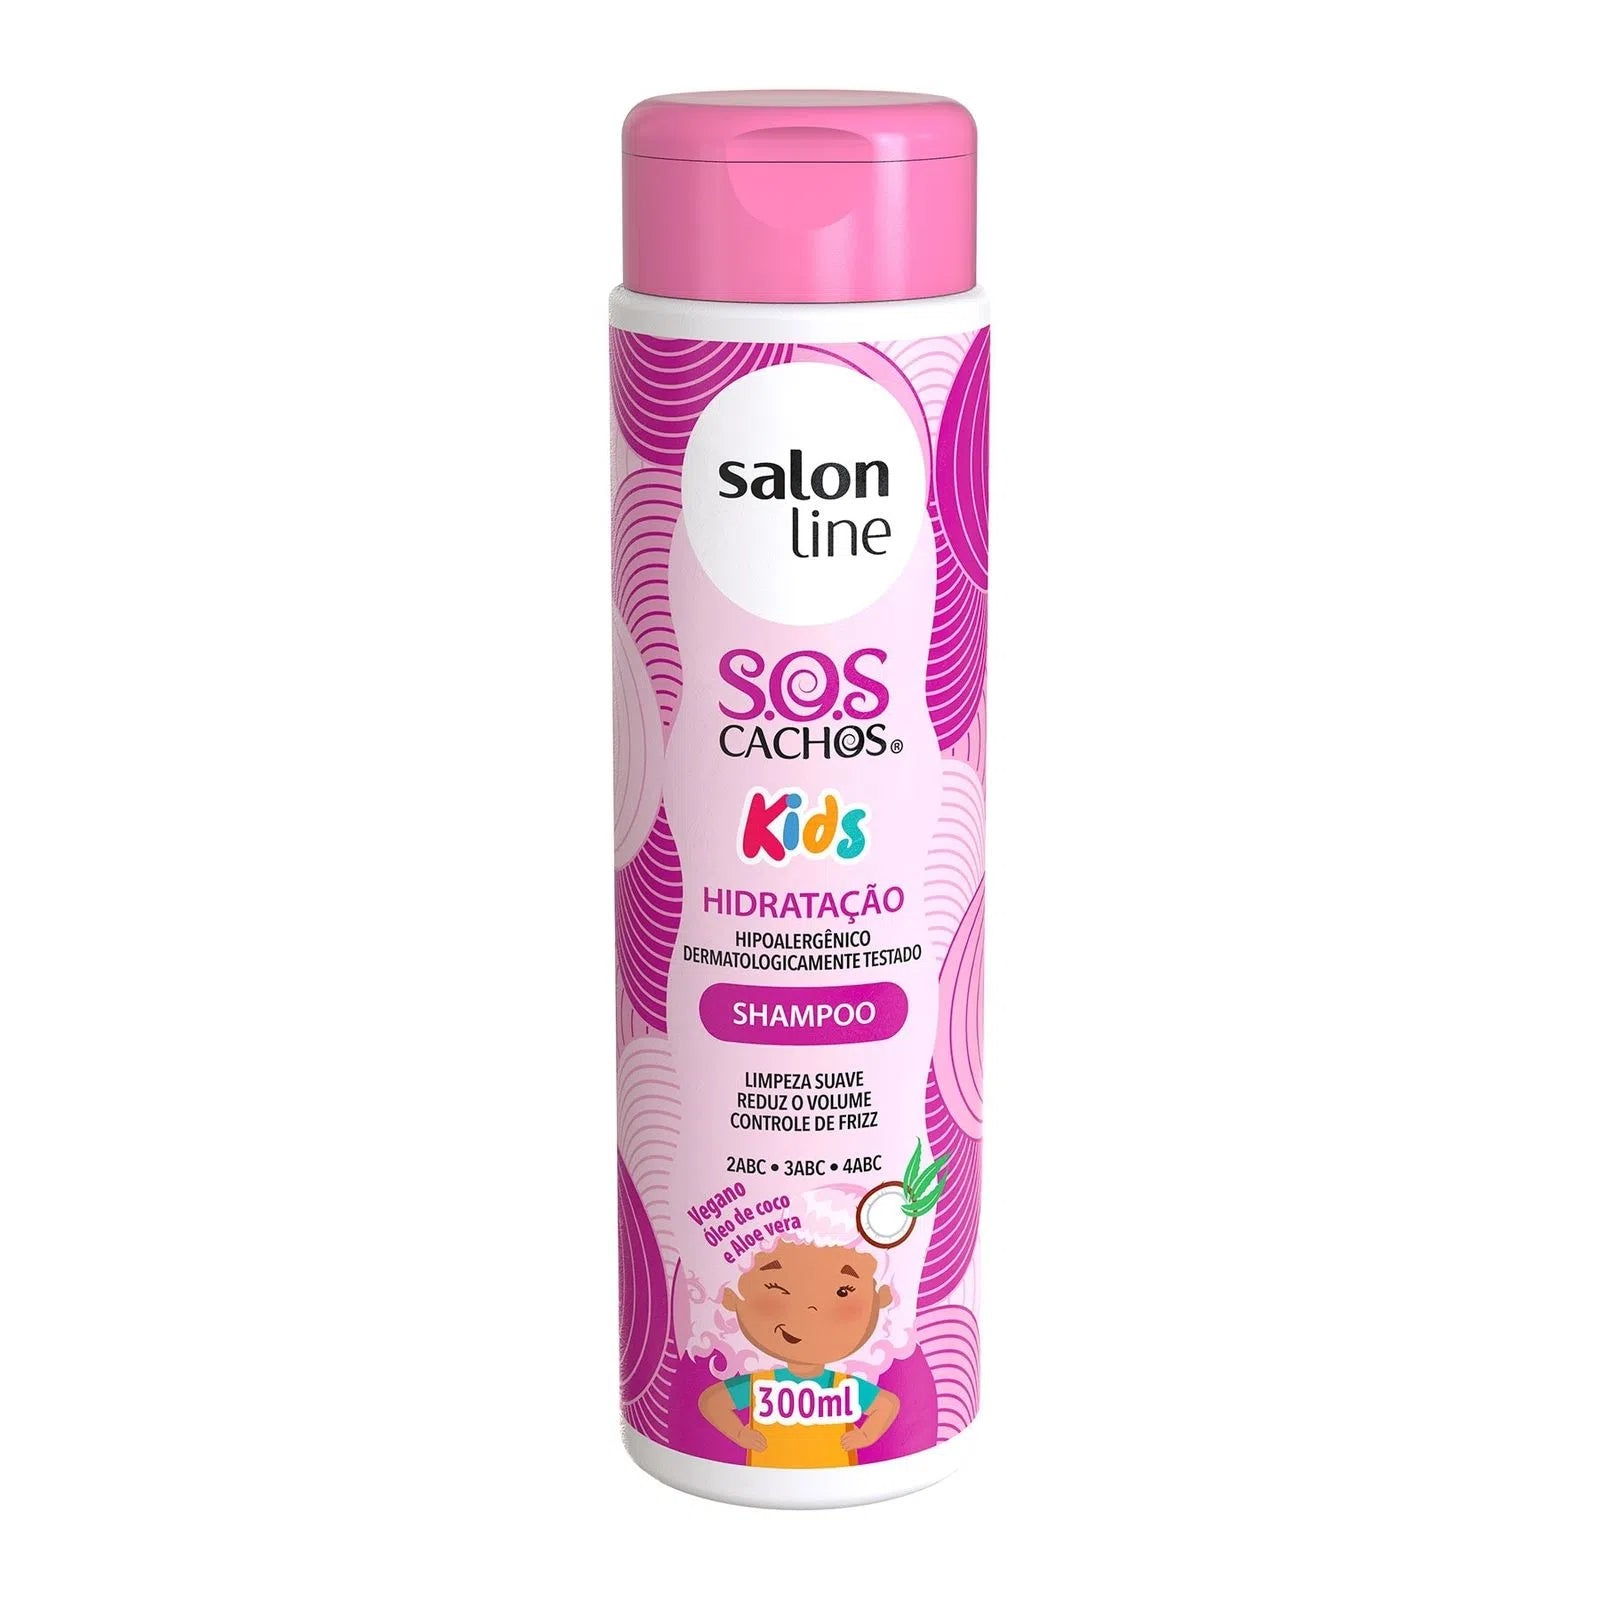 Sos Cachos Kids Hidratação Shampoo Salon Ligne 300ml